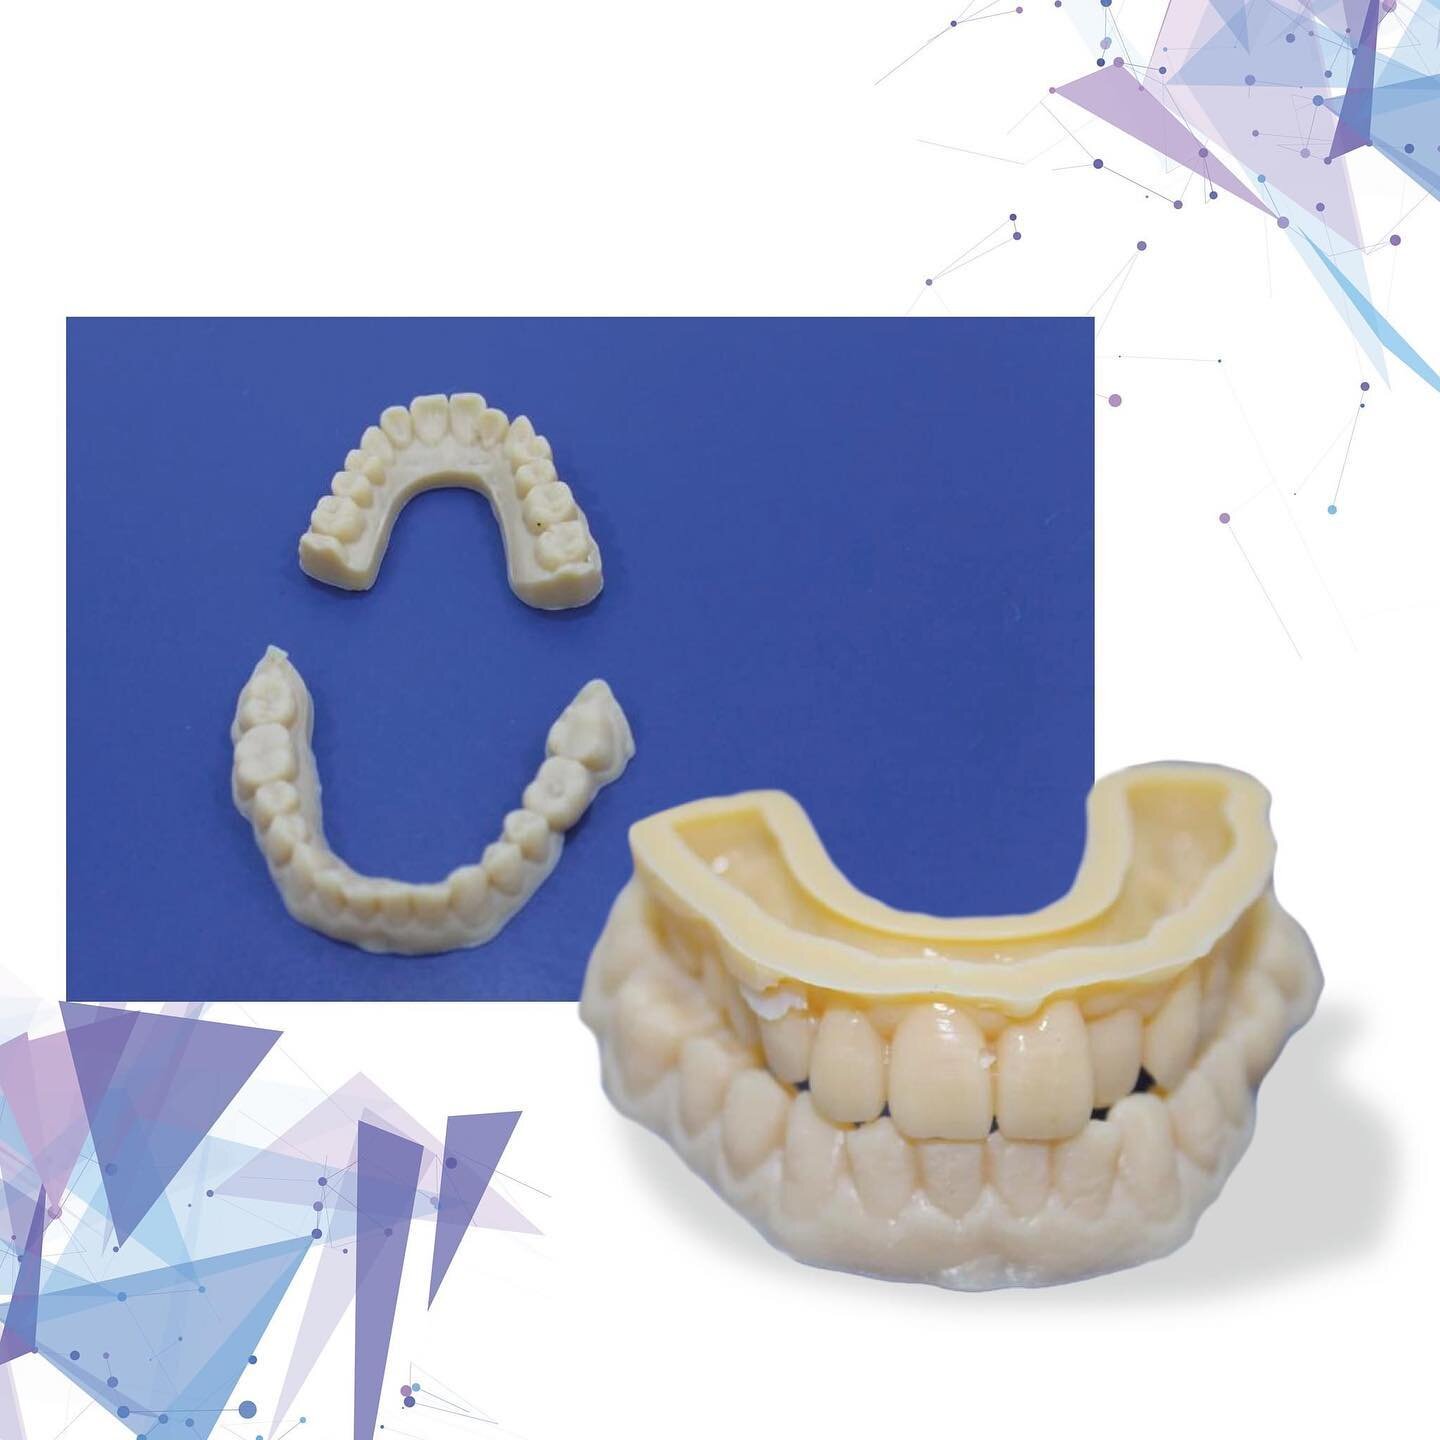 La stampa 3D consente al laboratorio odontotecnico di produrre in modo accurato e rapido corone, ponti, modelli di arcate dentali, mascherine e dime chirurgiche.

NPS MILLING utilizza una resina ad alta precisione, con incastri che supportano tollera